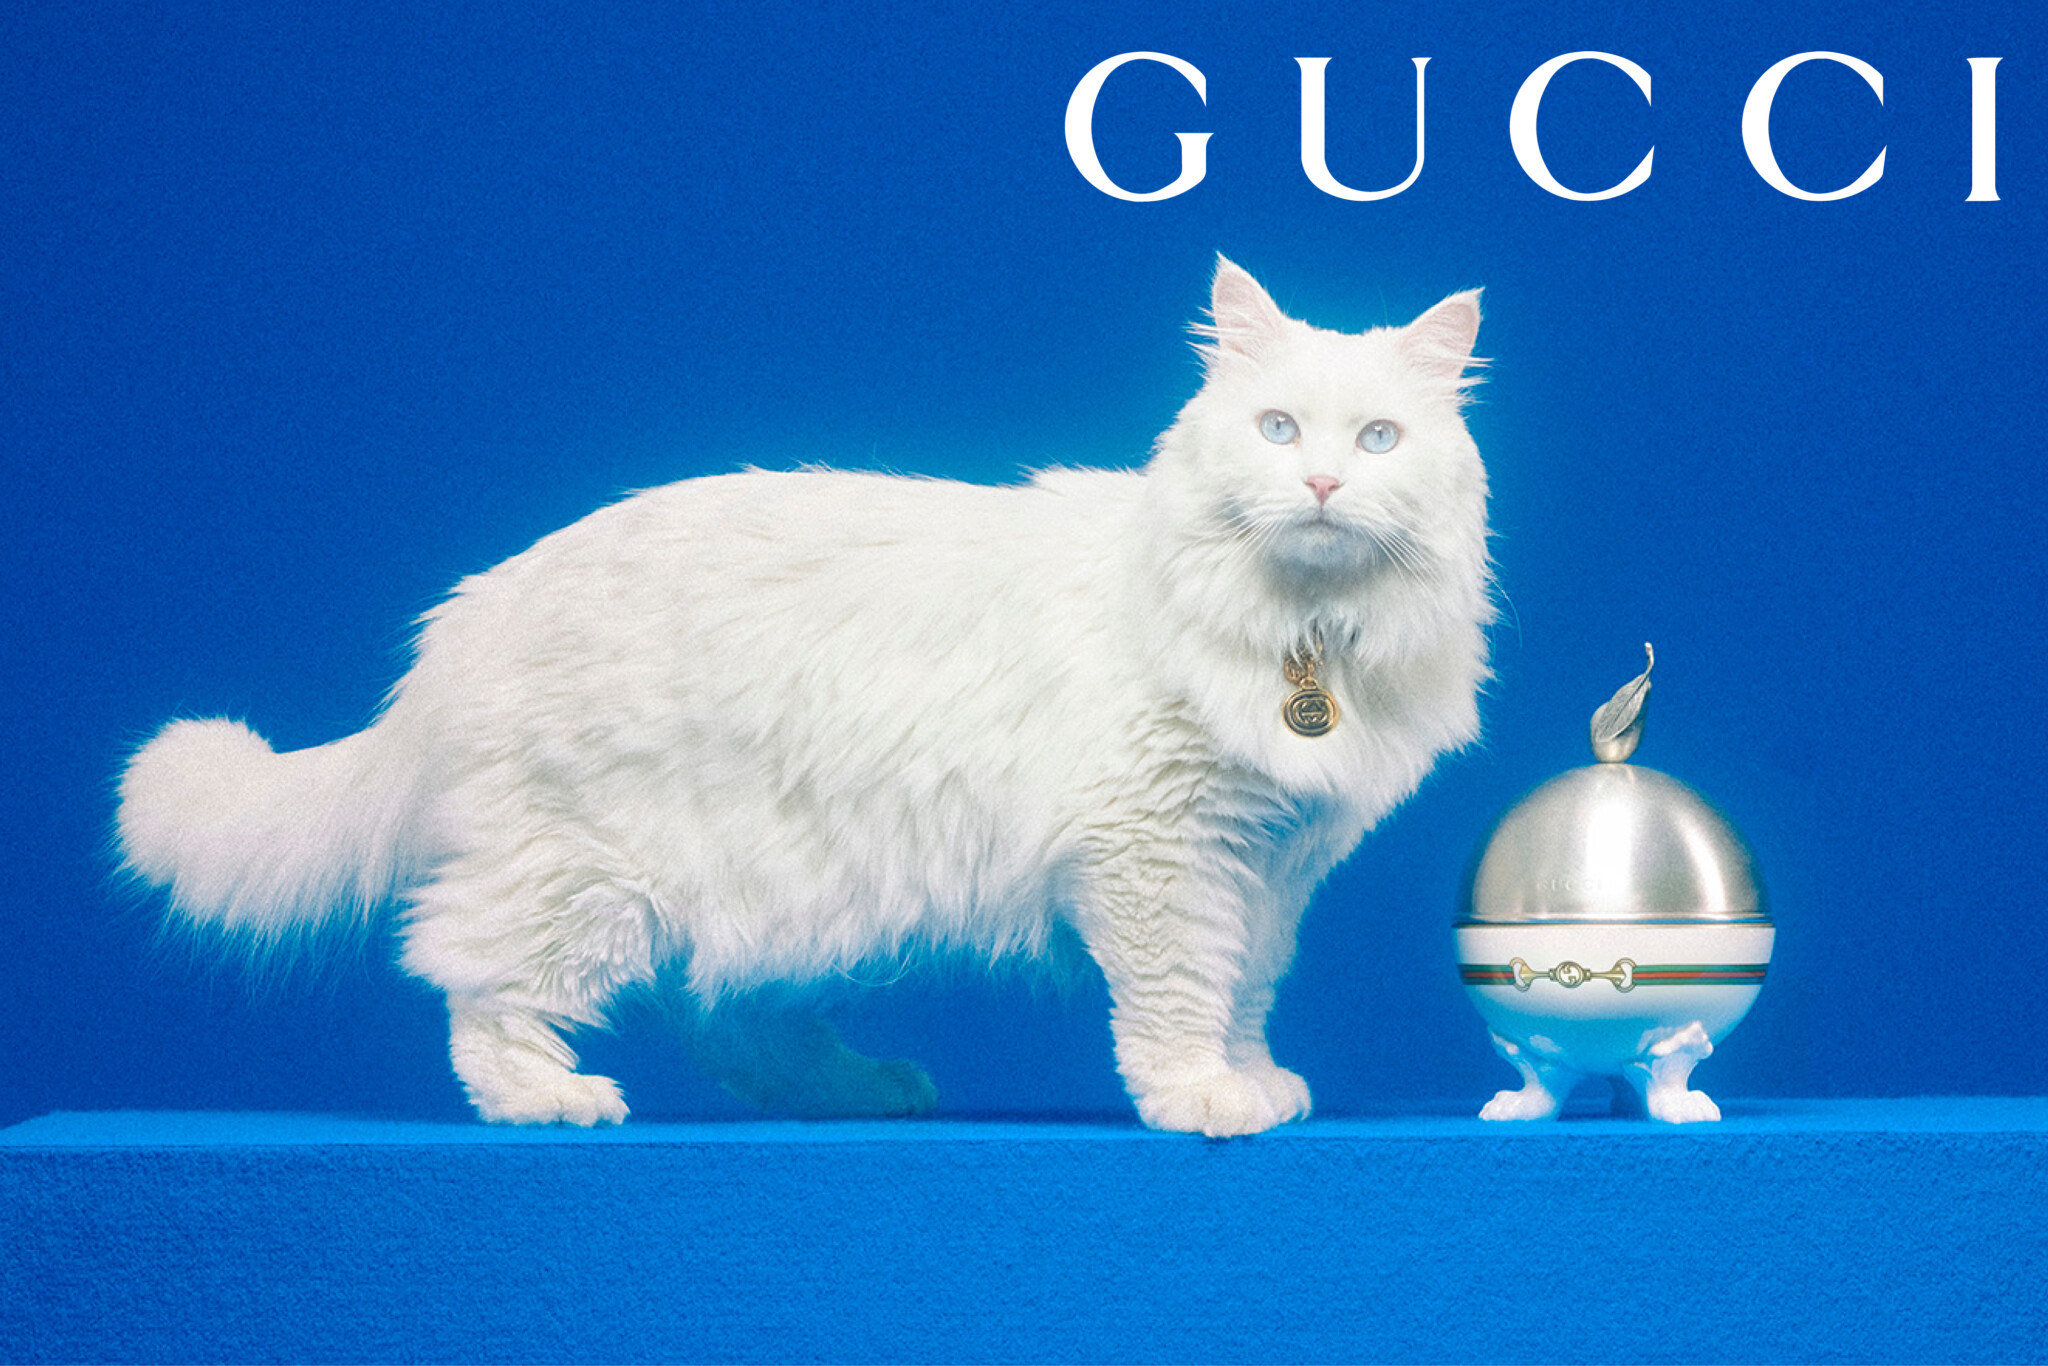 A Gucci a macskákra is gondolt